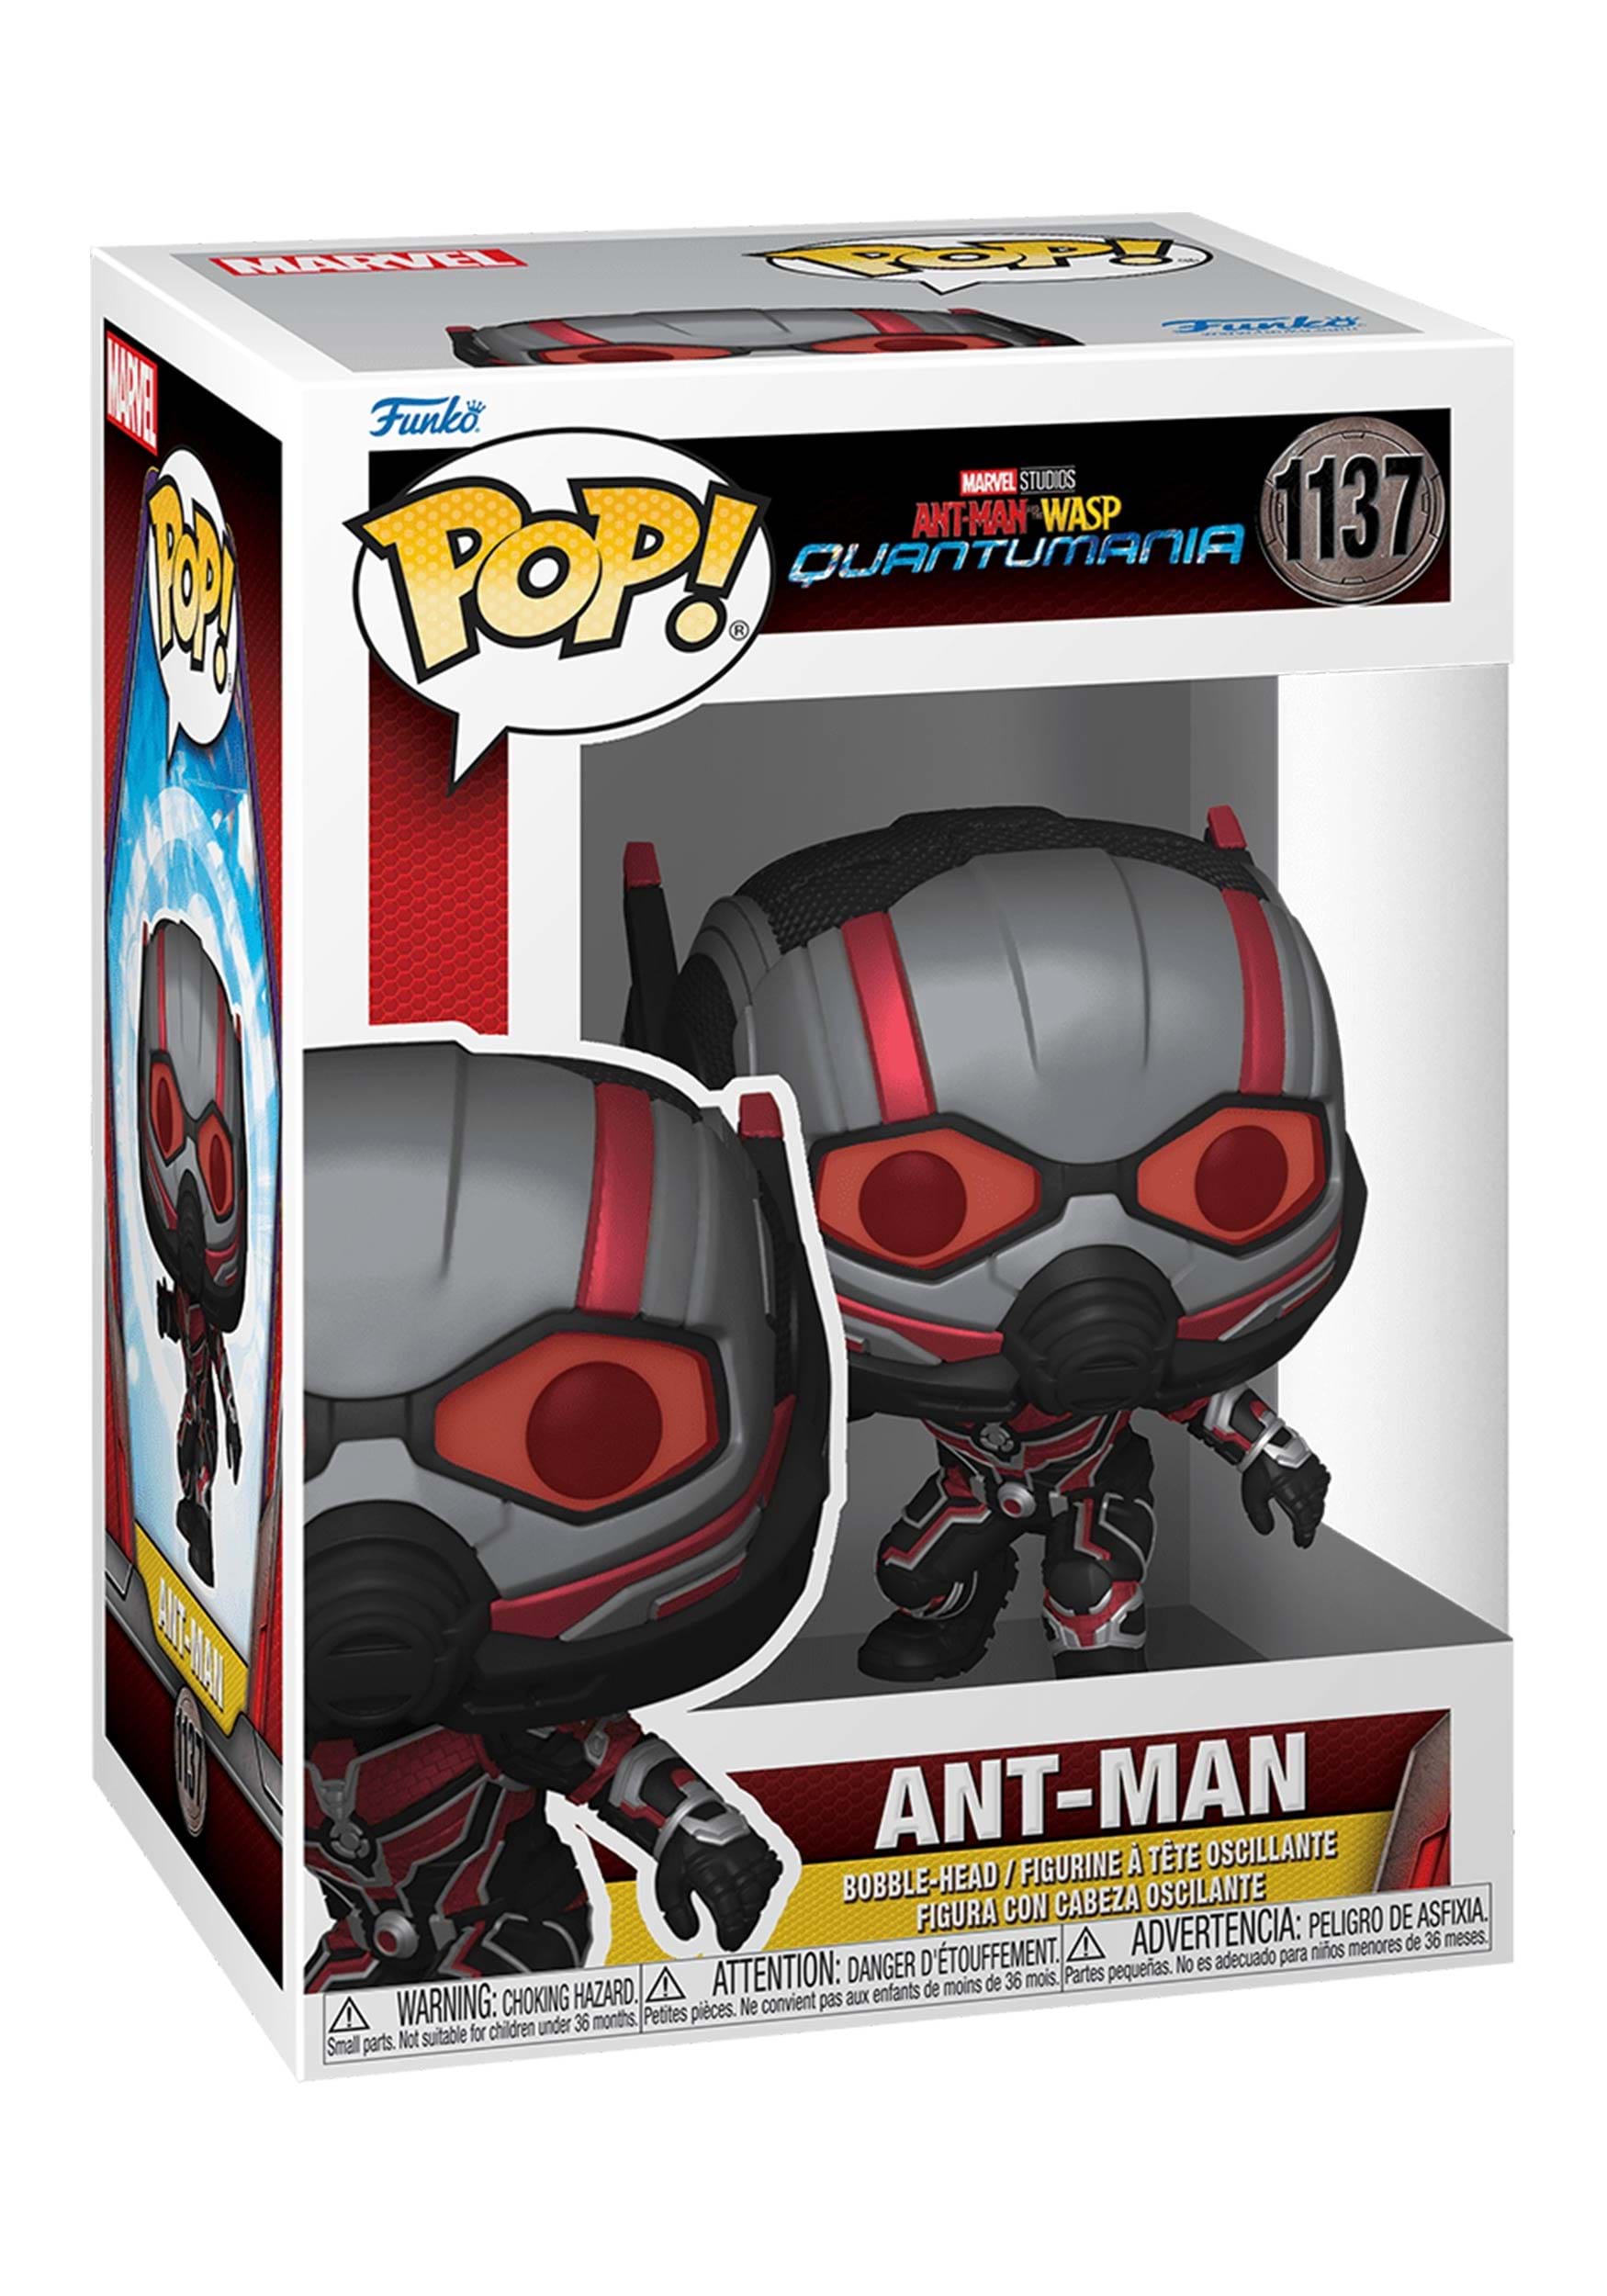 Funko POP! Vinyl: Ant-Man: Quantumania Ant-Man Figure